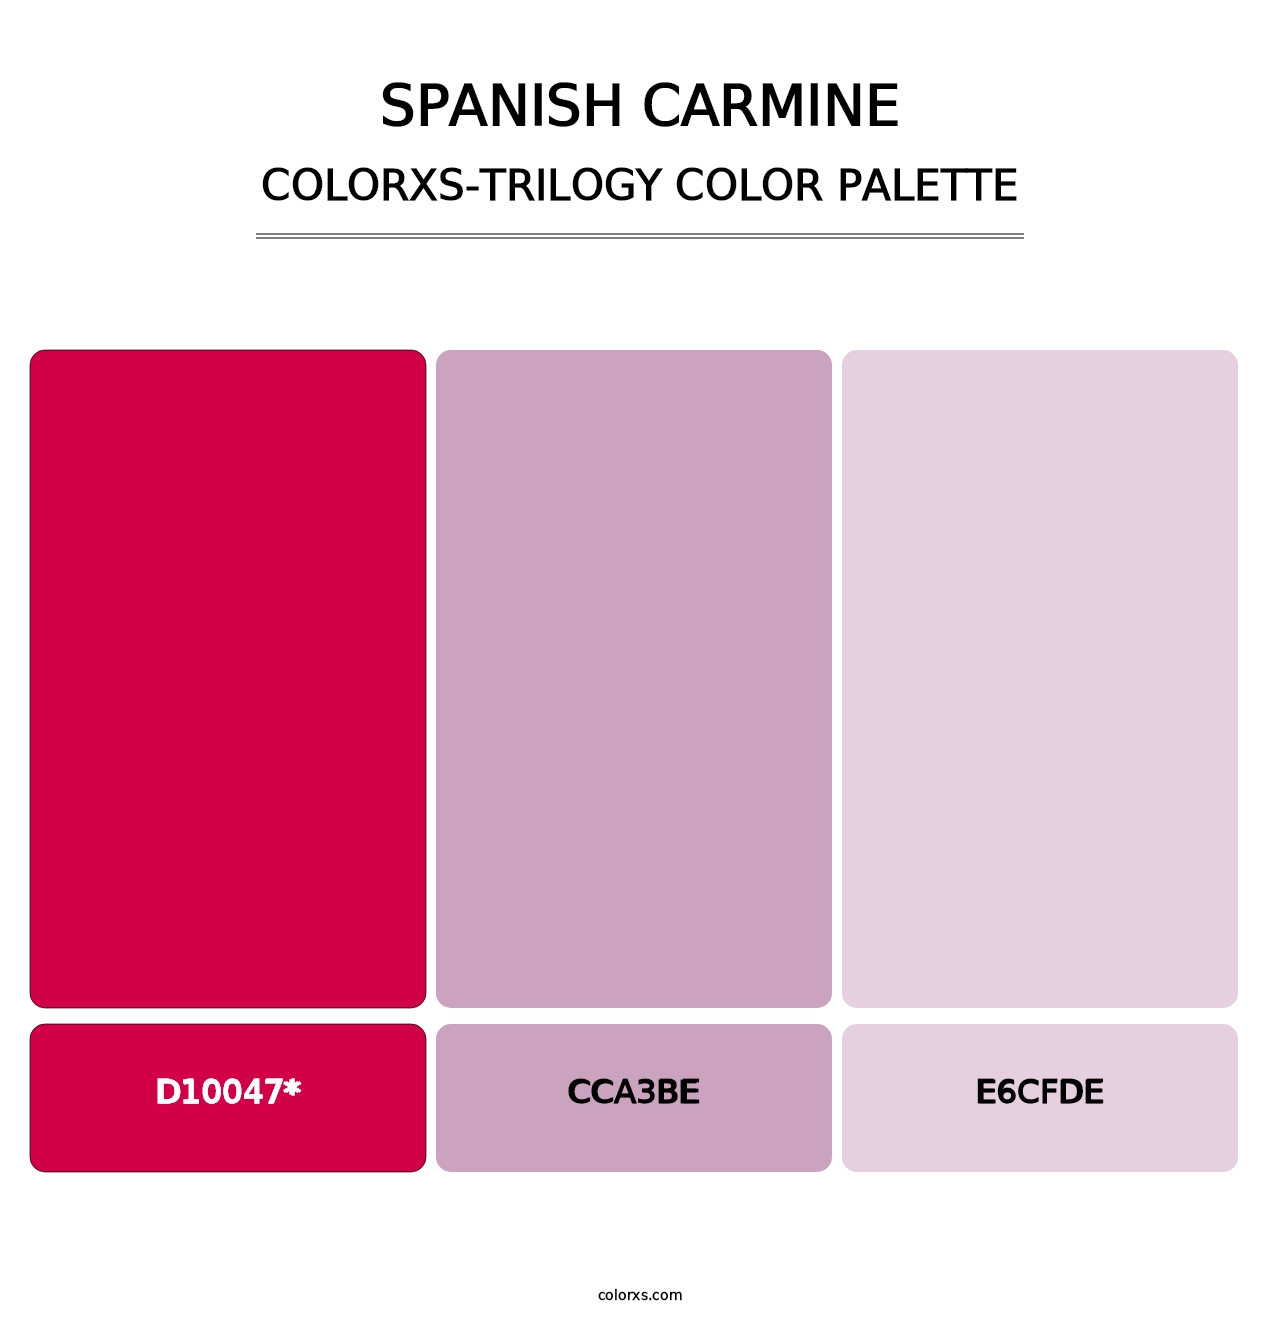 Spanish Carmine - Colorxs Trilogy Palette